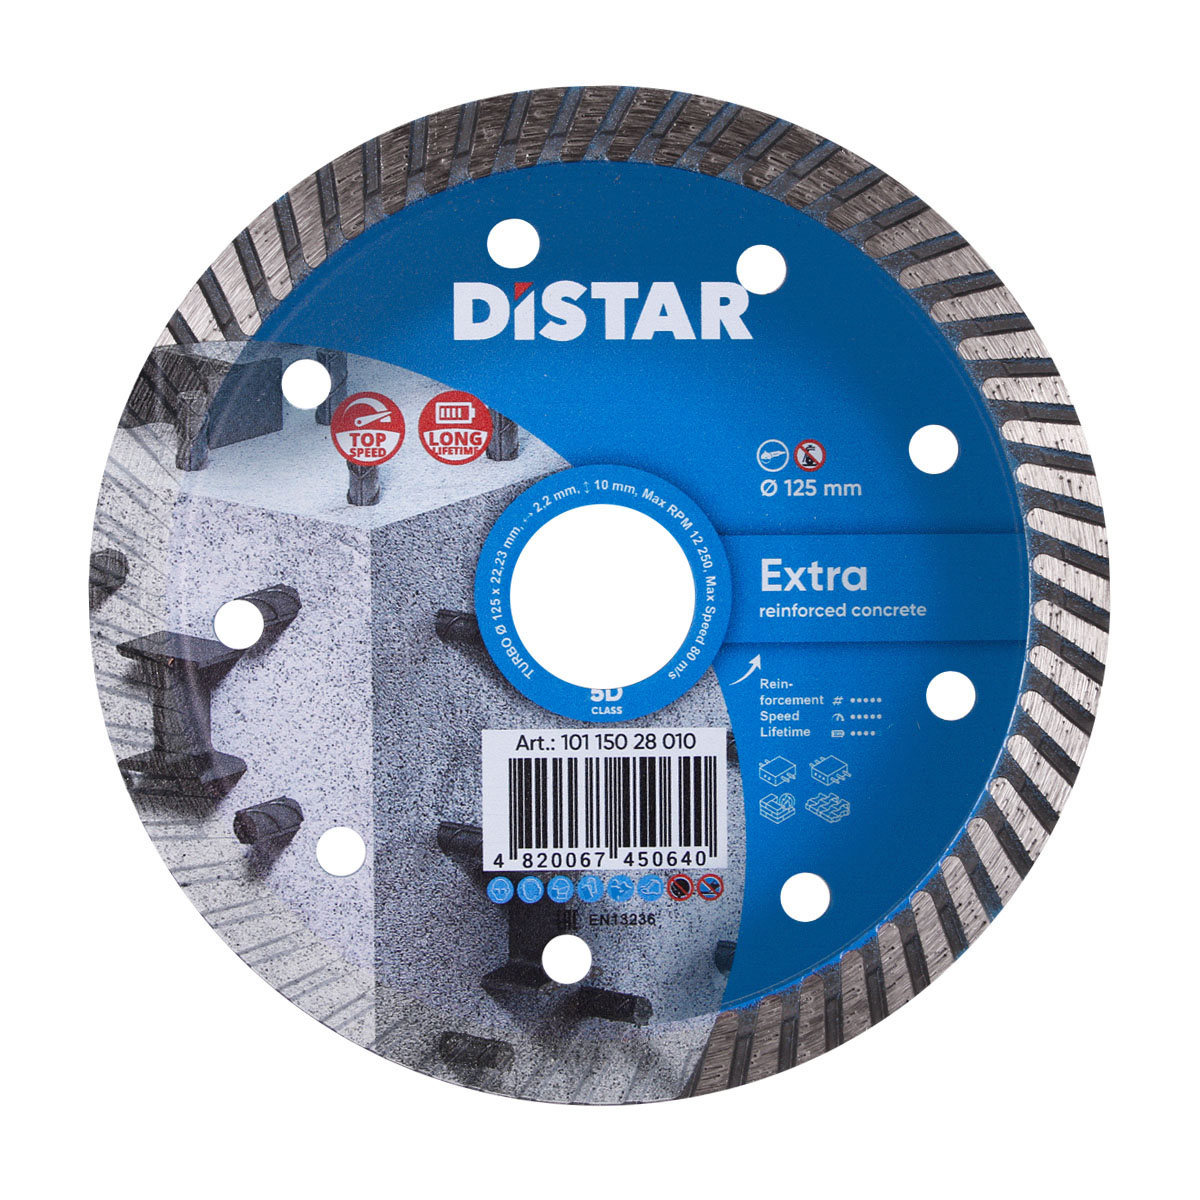 Диск алмазный отрезной по бетону для УШМ Distar 1A1R Turbo 125 мм Extra 5D диск алмазный отрезной по керамике и керамограниту distar 1a1r 250 мм hard ceramics 5d